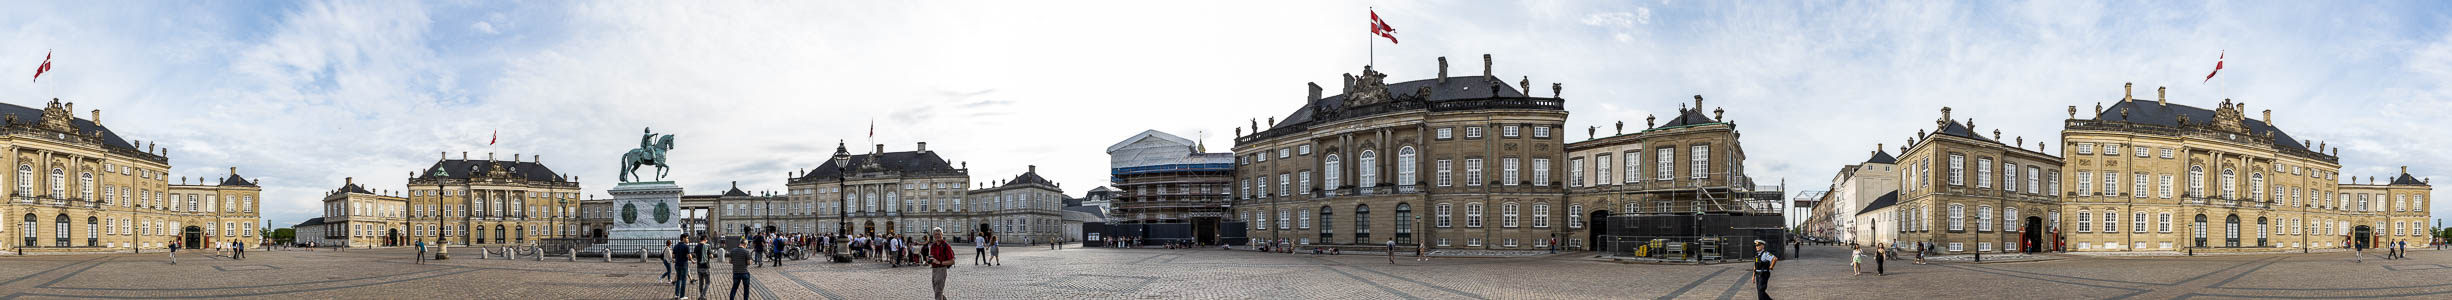 Kopenhagen Schloss Amalienborg, Reiterstandbild Frederik V. Palais Brockdorff (Palais Frederik VIII.) Palais Levetzau (Palais Christian VIII.) Palais Moltke (Palais Christian VII.) Palais Schack (Palais Christian IX.)